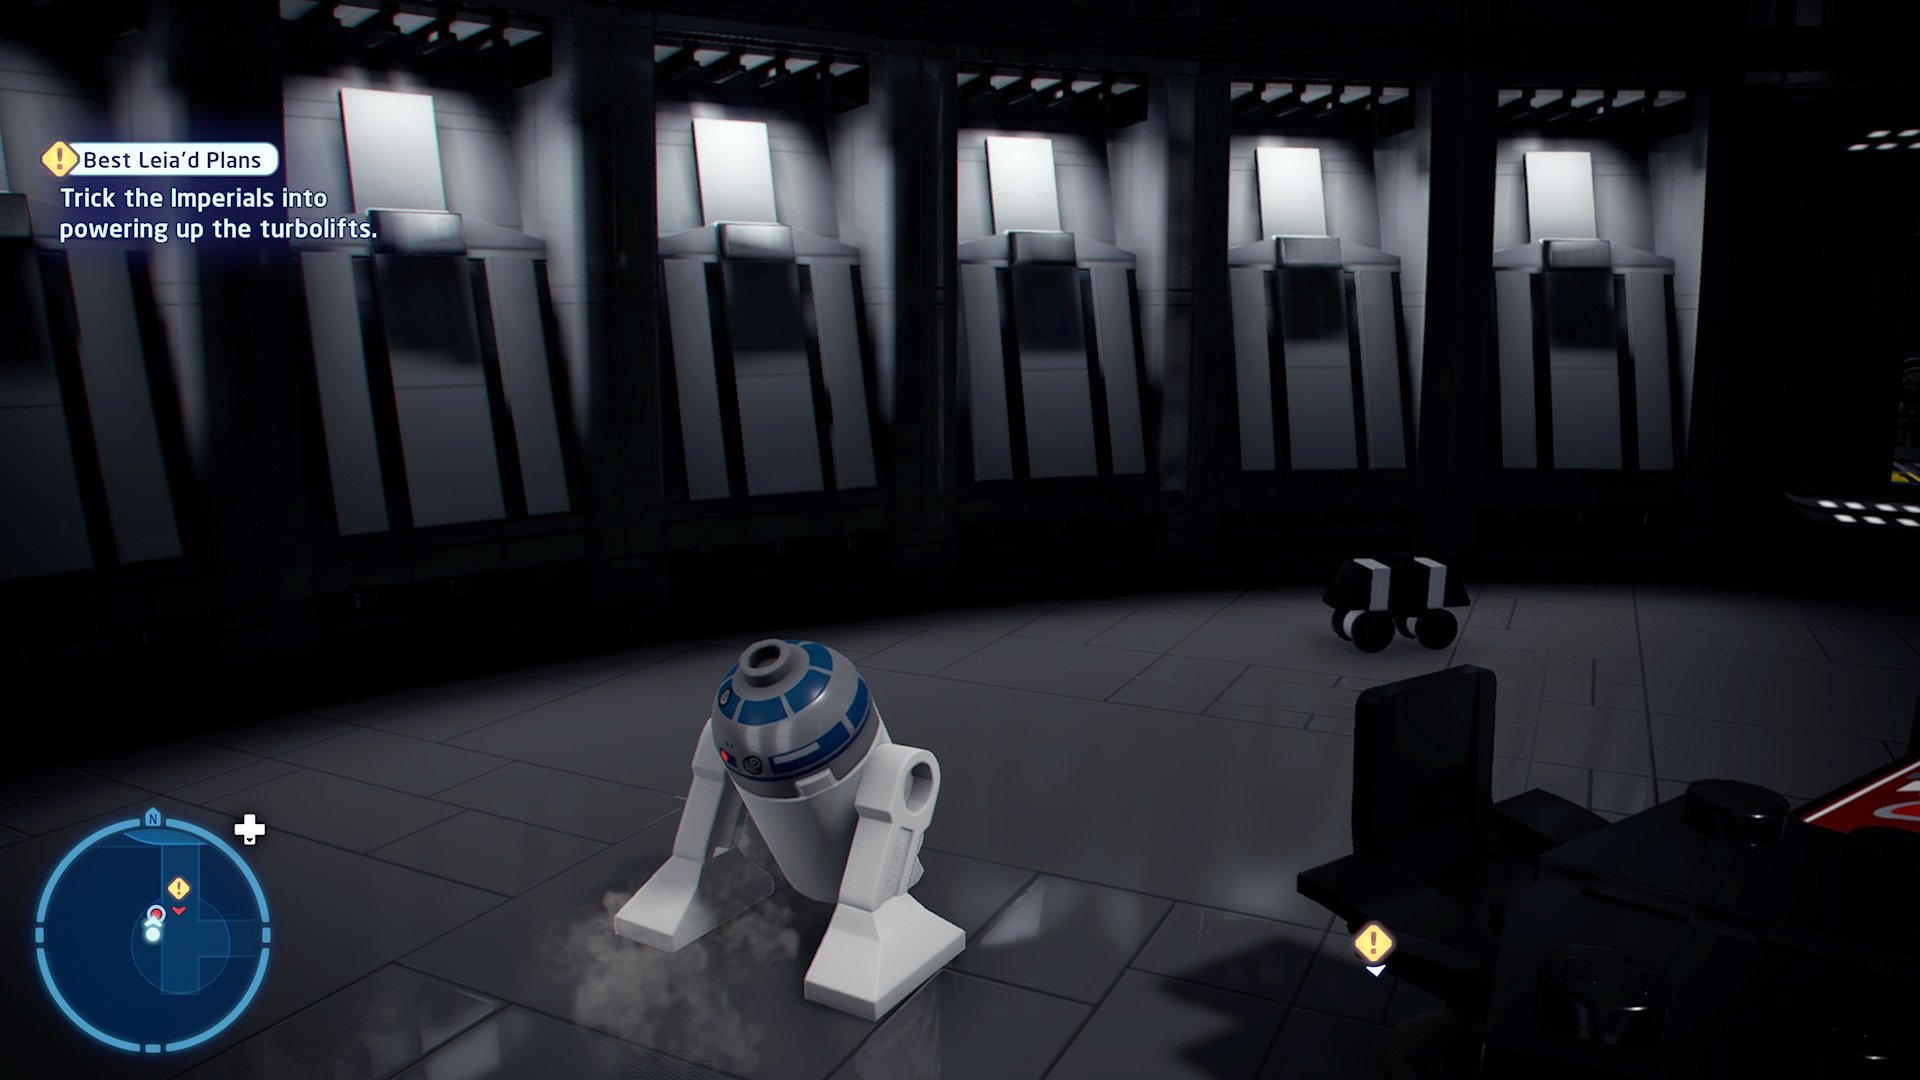 Best Leia'd Plans mouse droid 3